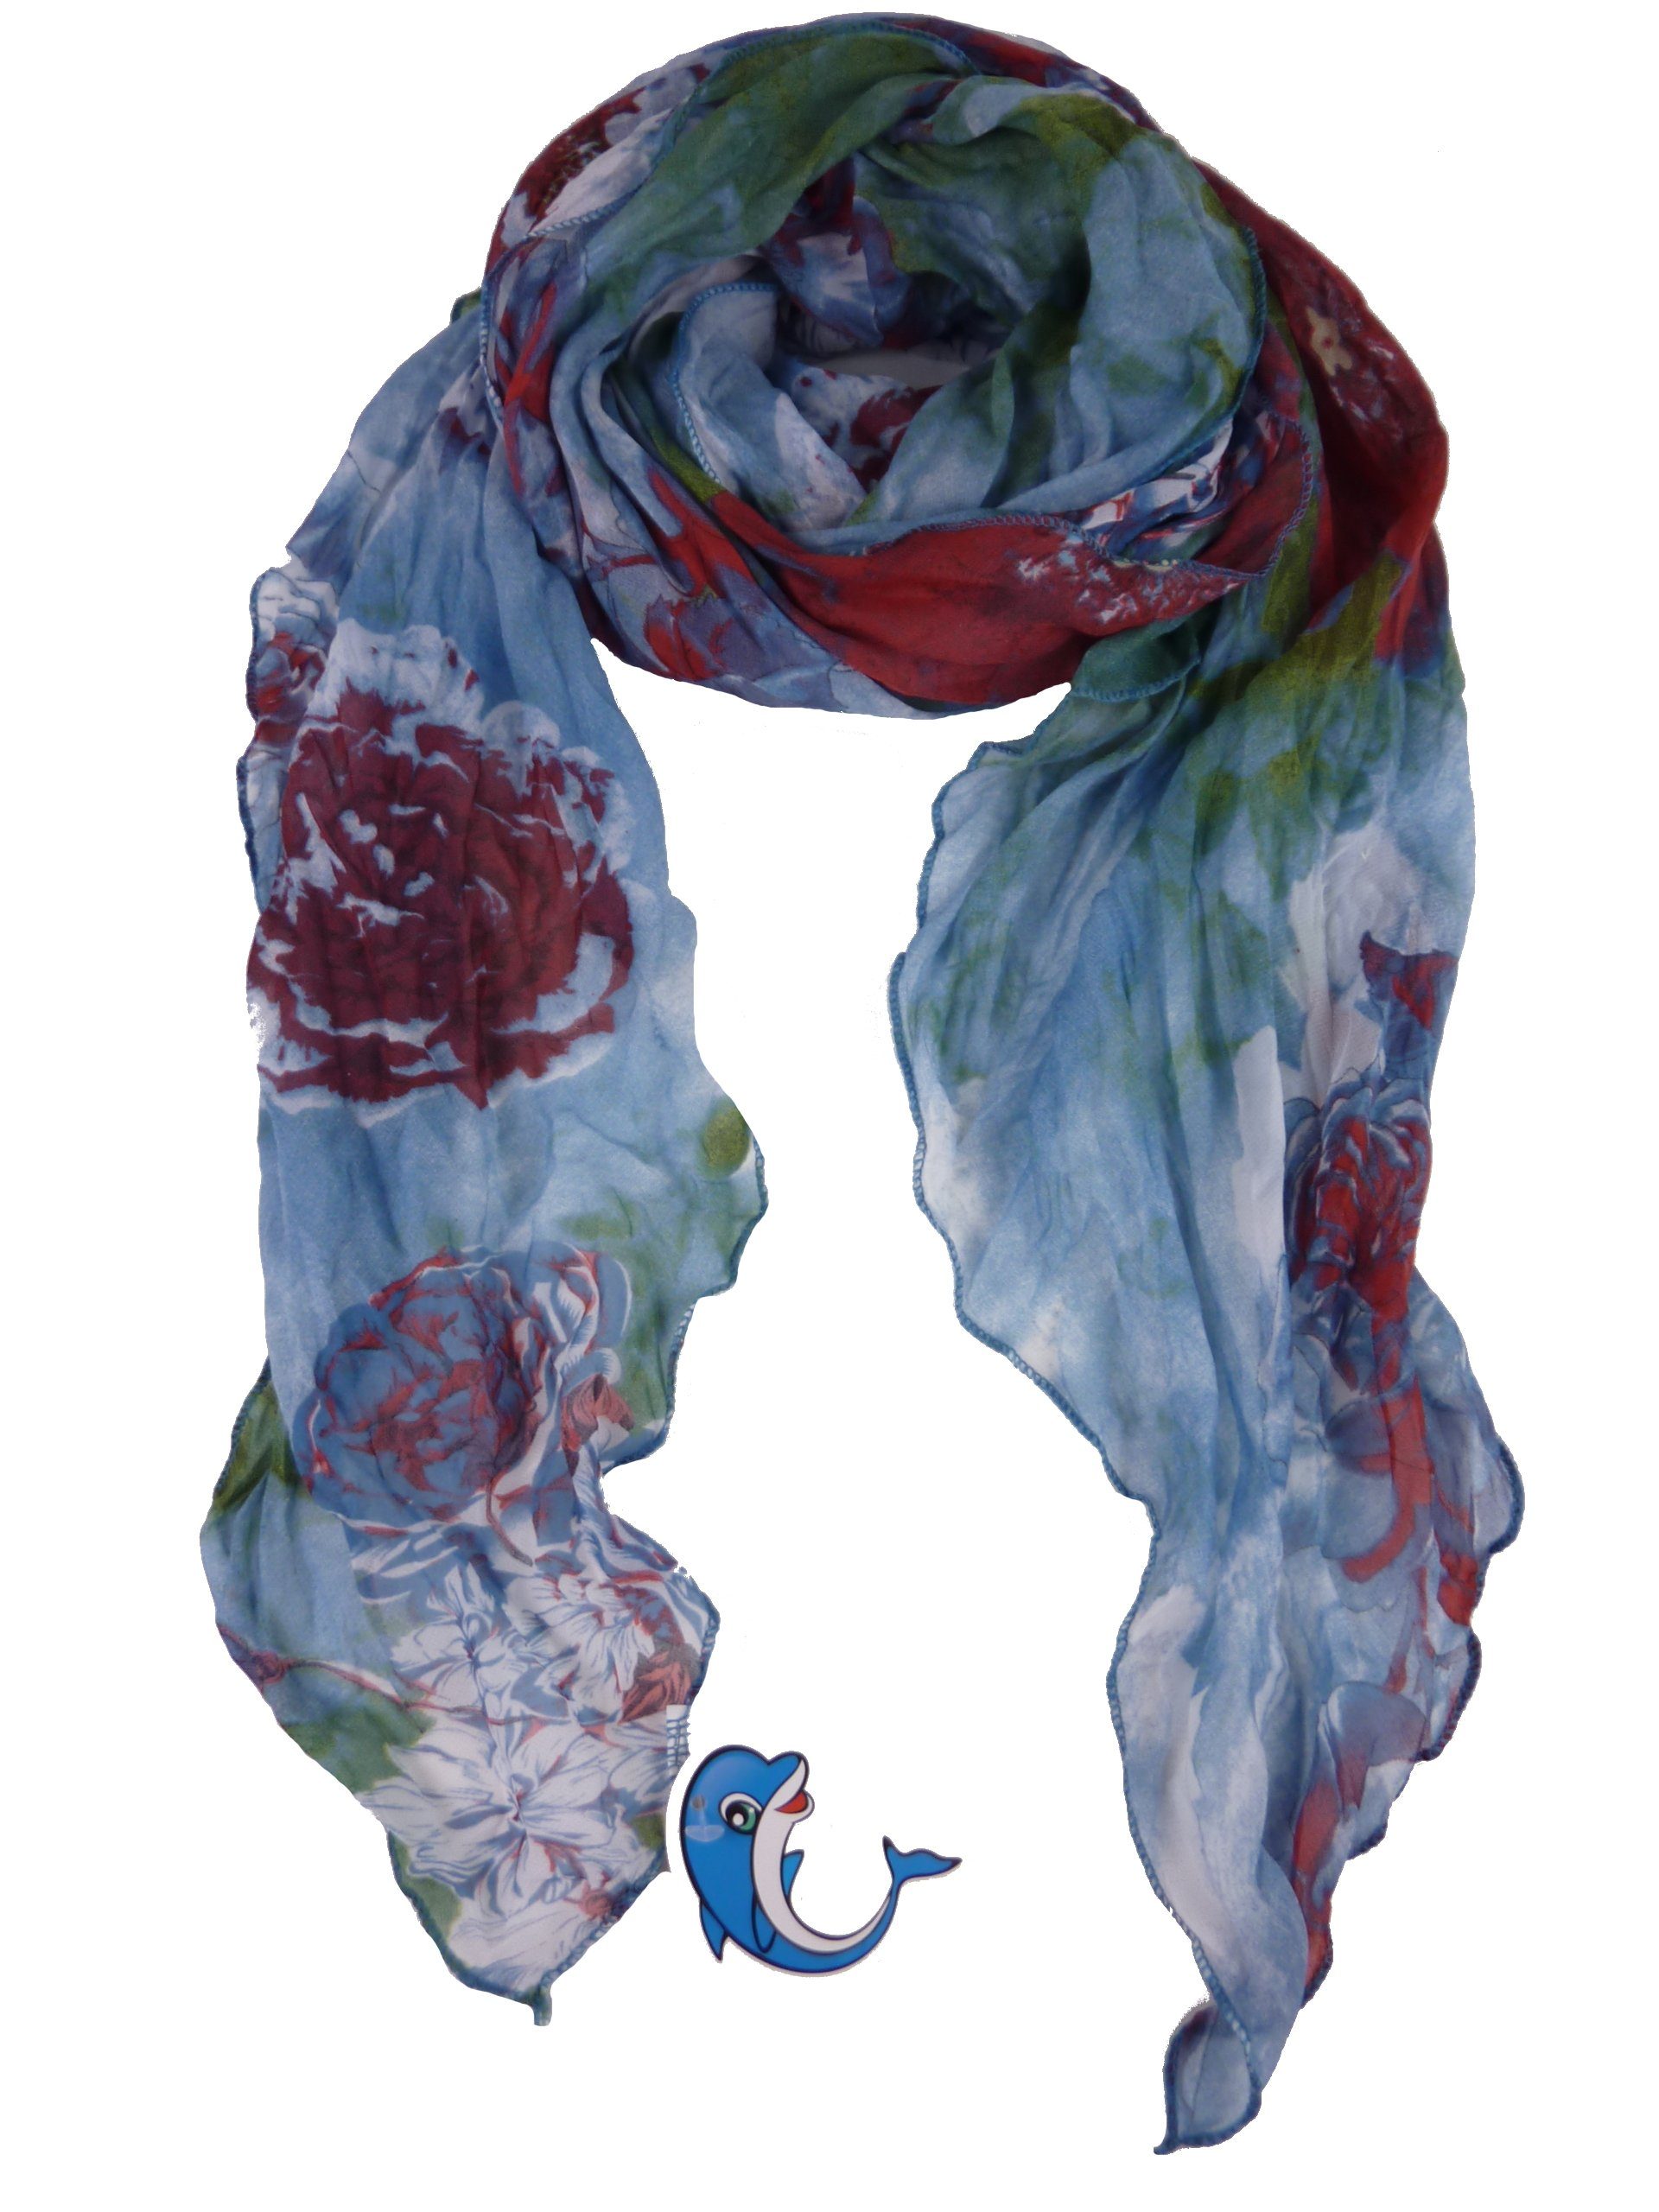 größter Versandhandel für Mode Taschen4life Schal Damen grün/rost/blau Schal QS-05-XJ, Tuch Muster, mehrfarbig gemustert Blumen